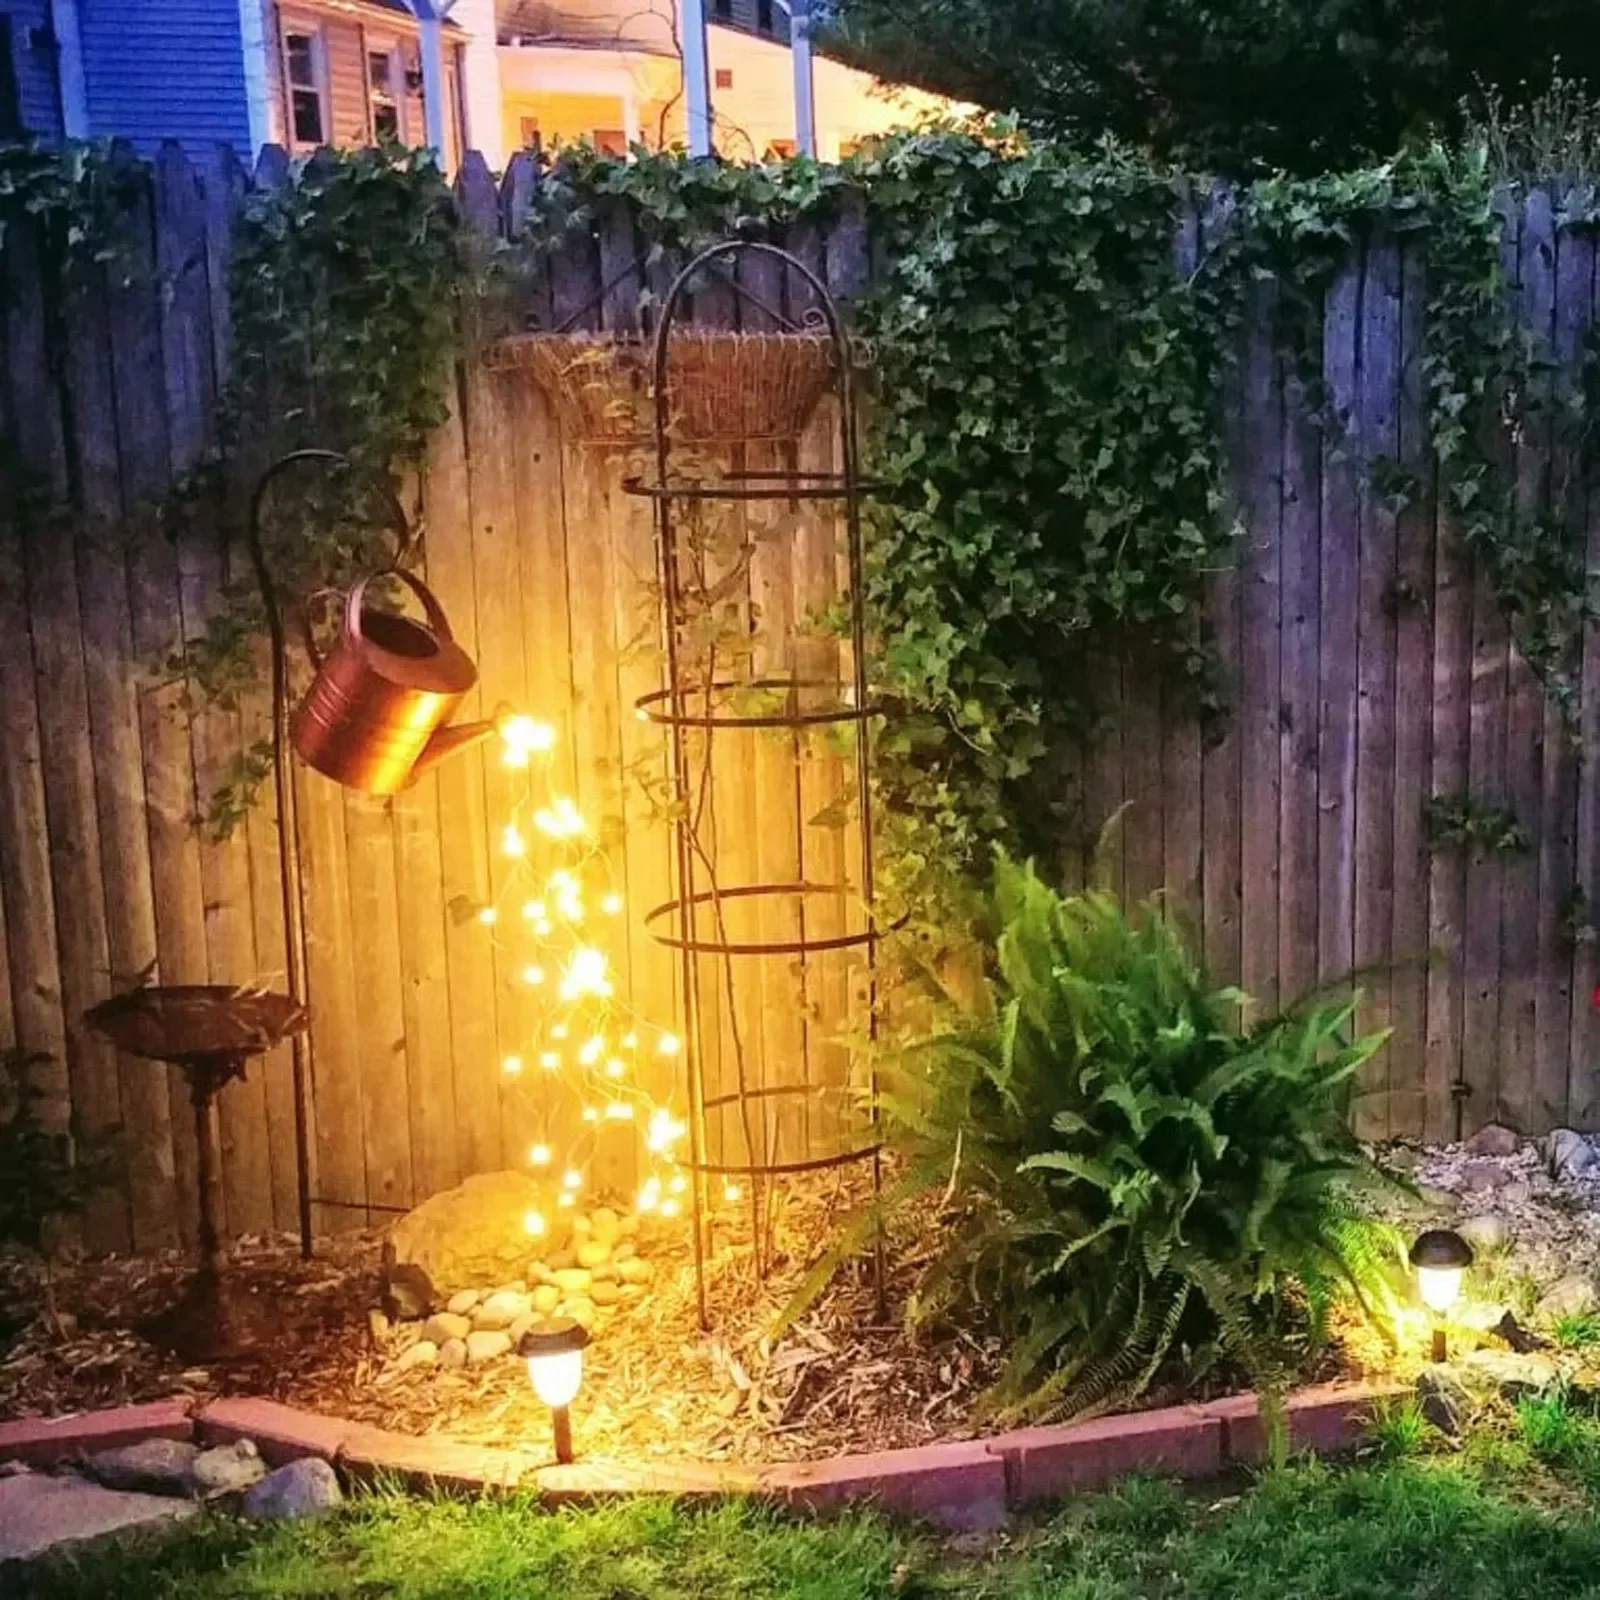 

Садовый декоративный светильник звездного типа, уличная лампа на батарейках для полива, украшение для дома, садовая лампа для газона со сто...